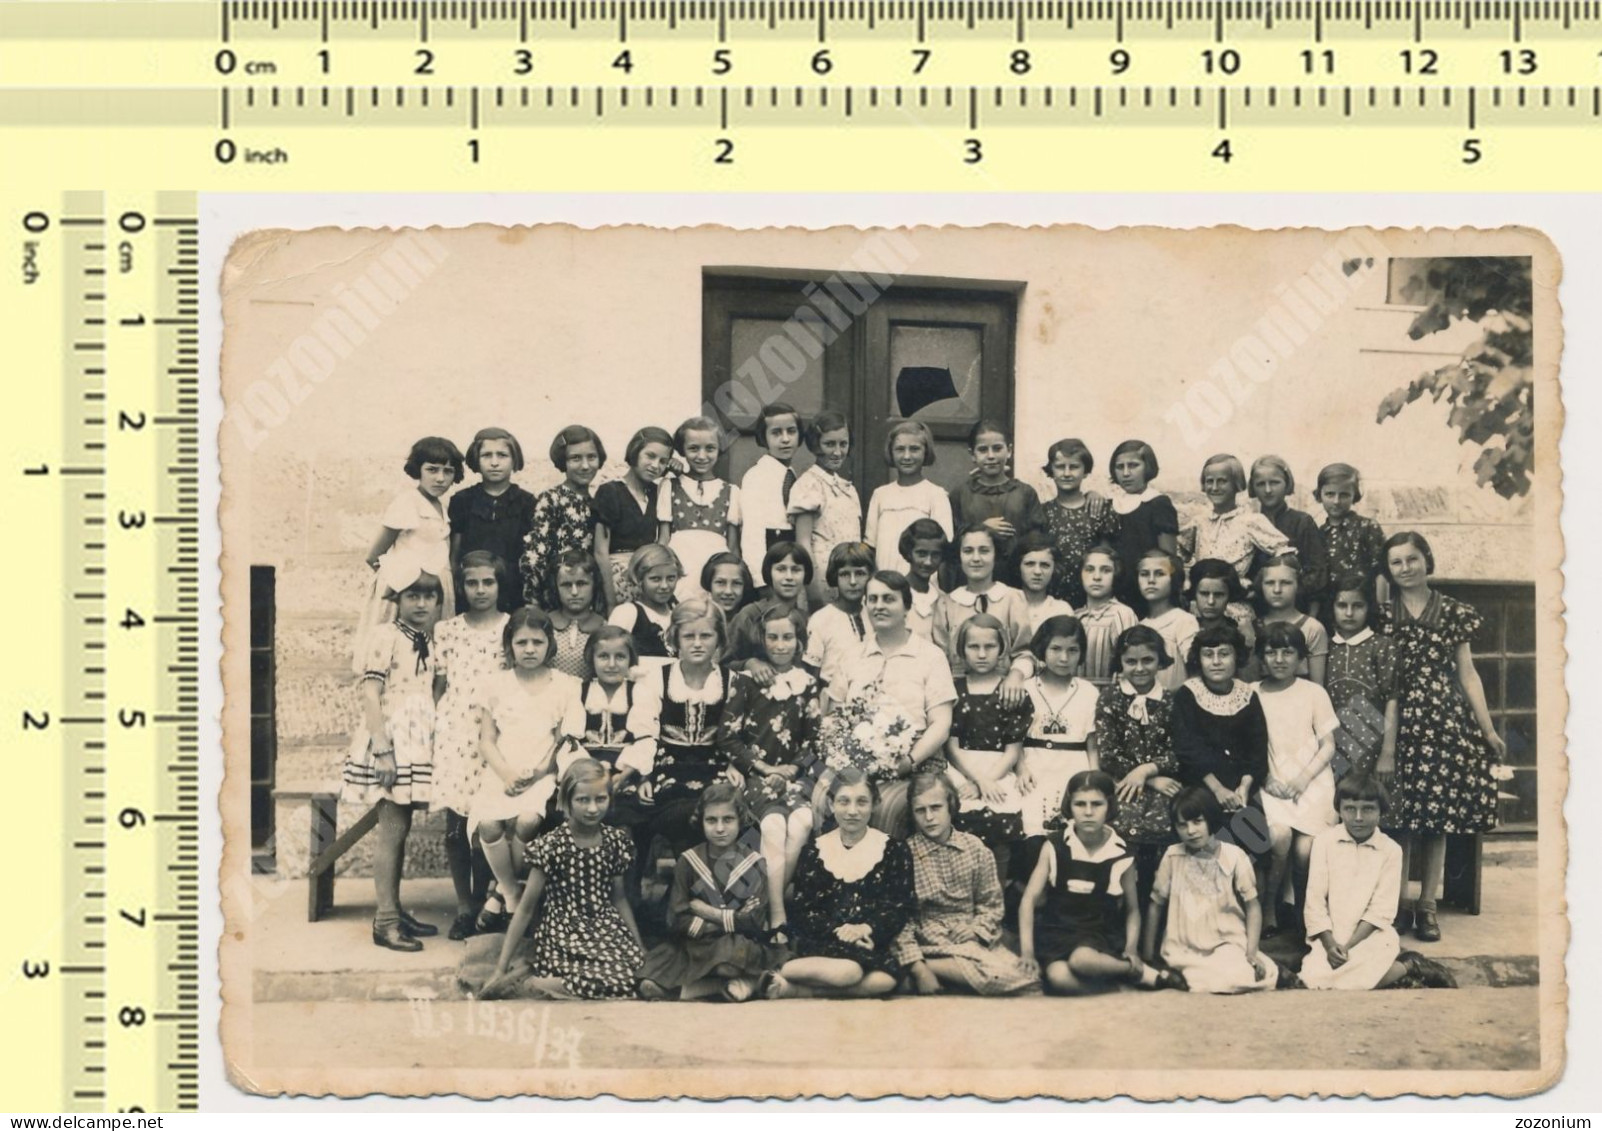 1930s School Girls, Kids Children Teacher Écolières Enfants Avec Professeur Fillettes Beograd Serbia VTG OLD PHOTO - Personnes Anonymes